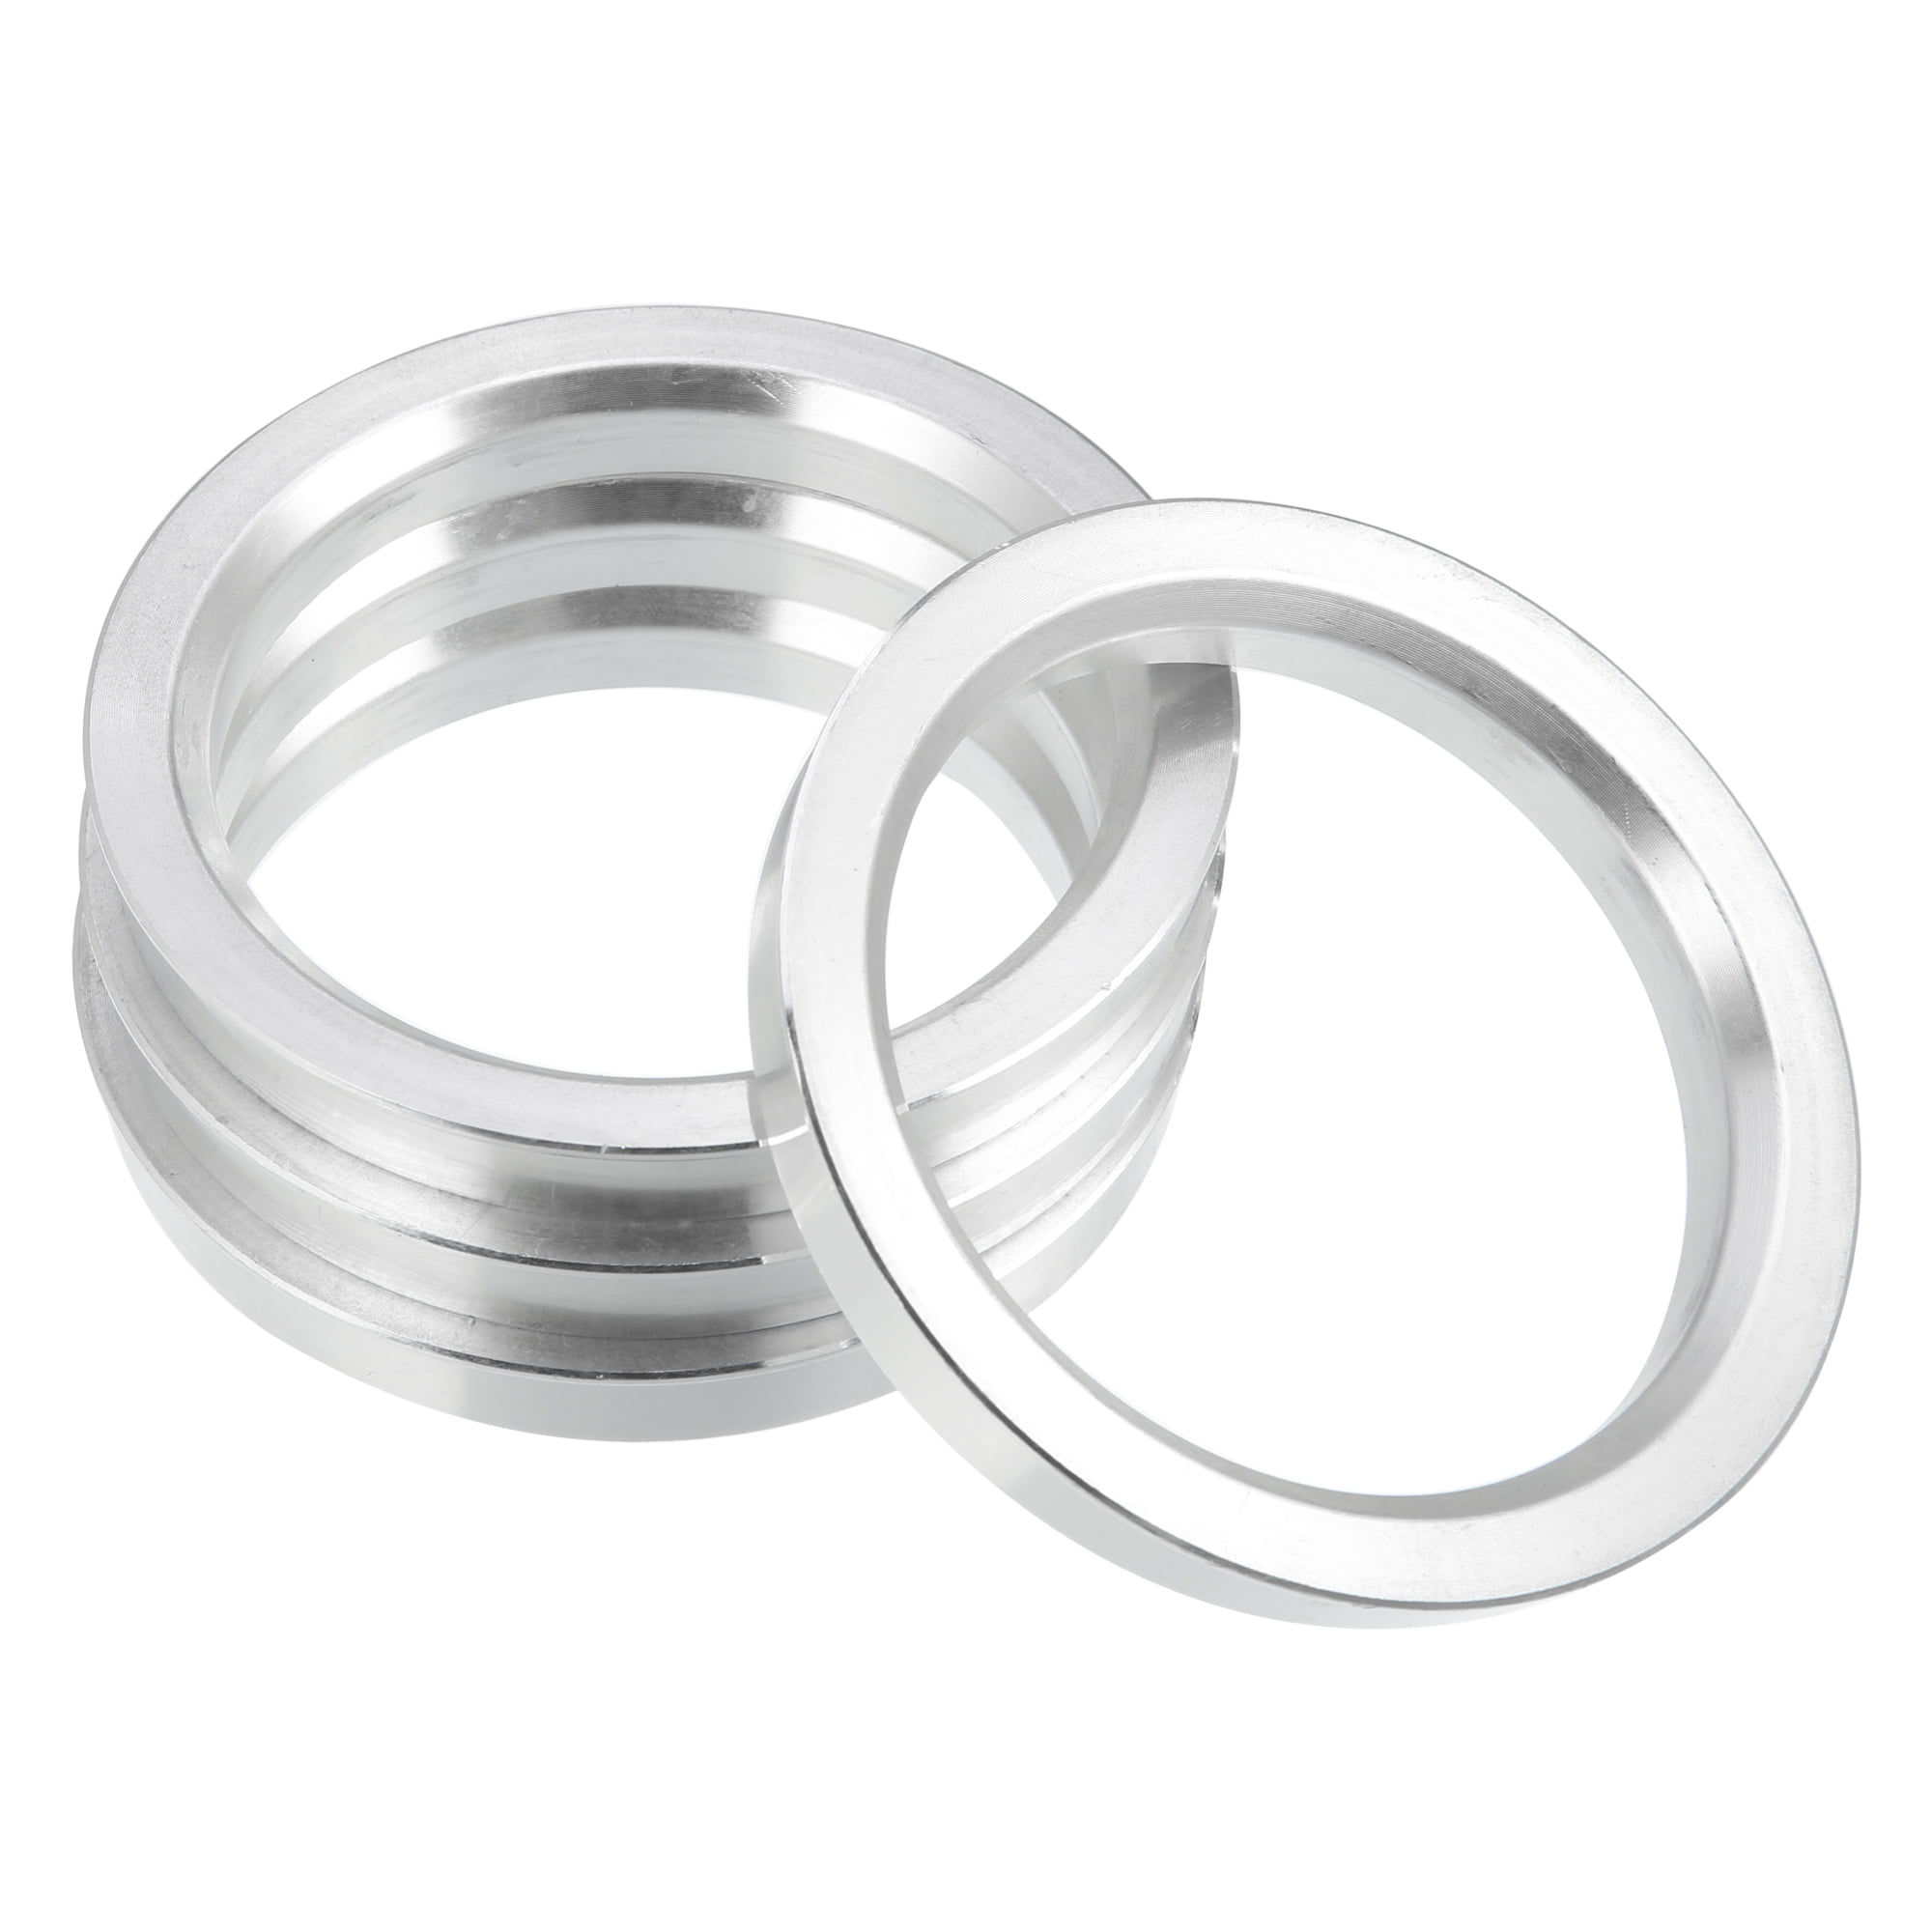 Rim U|aluminum Hub Centric Rings 72.1-67.1mm - 4-pack Wheel Bore Spacers